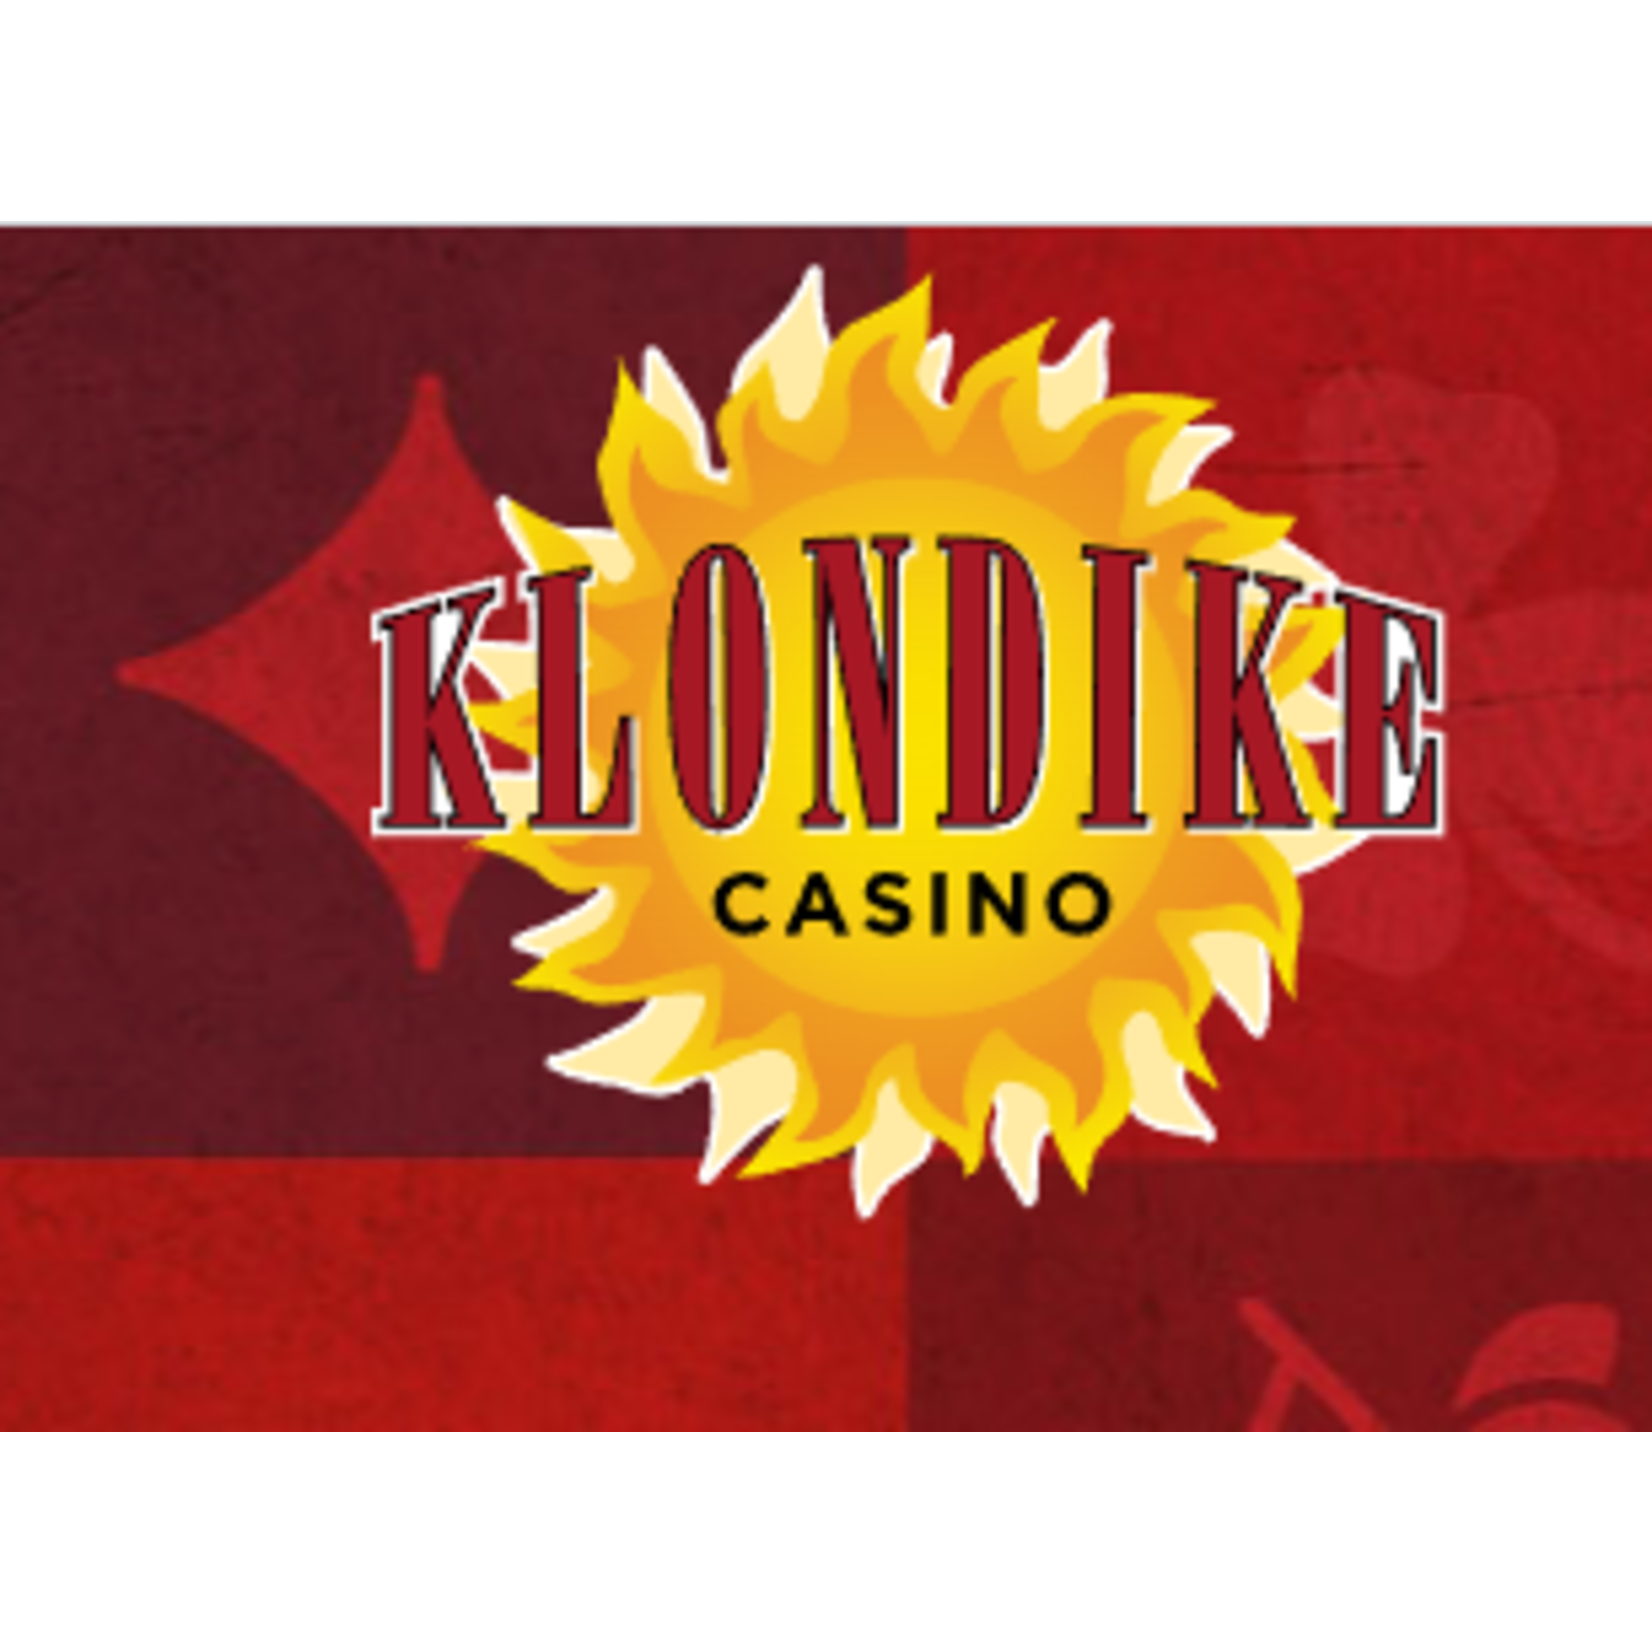 Klondike Casino - The Klondike Grill Klondike Casino - The Klondike Grill $20 - Menu Items